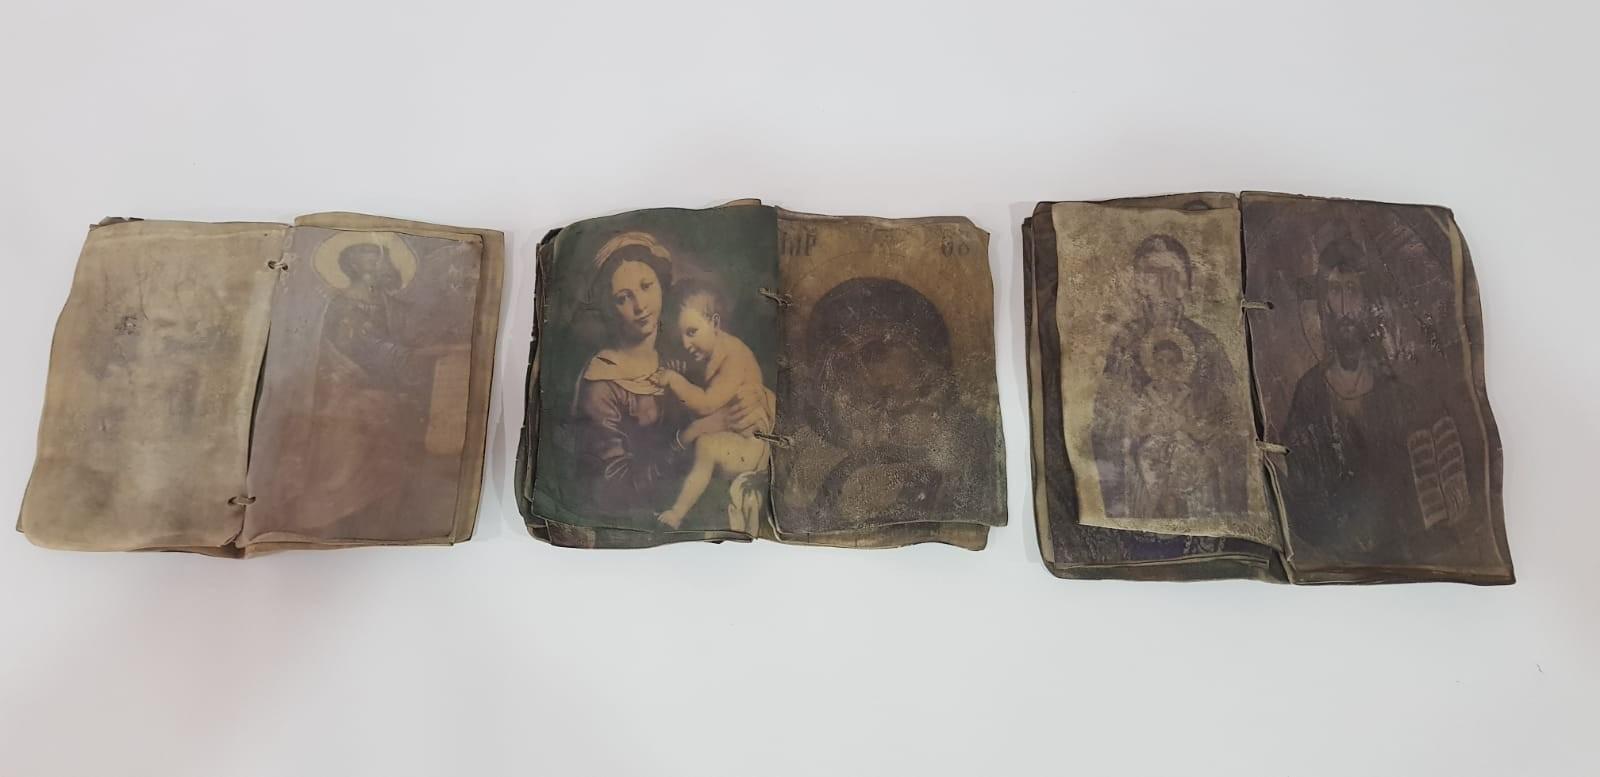 Kırıkkale’de ceylan derisi üzerine yazılmış tarihi dua kitapları ele geçirildi - Kırıkkale Haber, Son Dakika Kırıkkale Haberleri